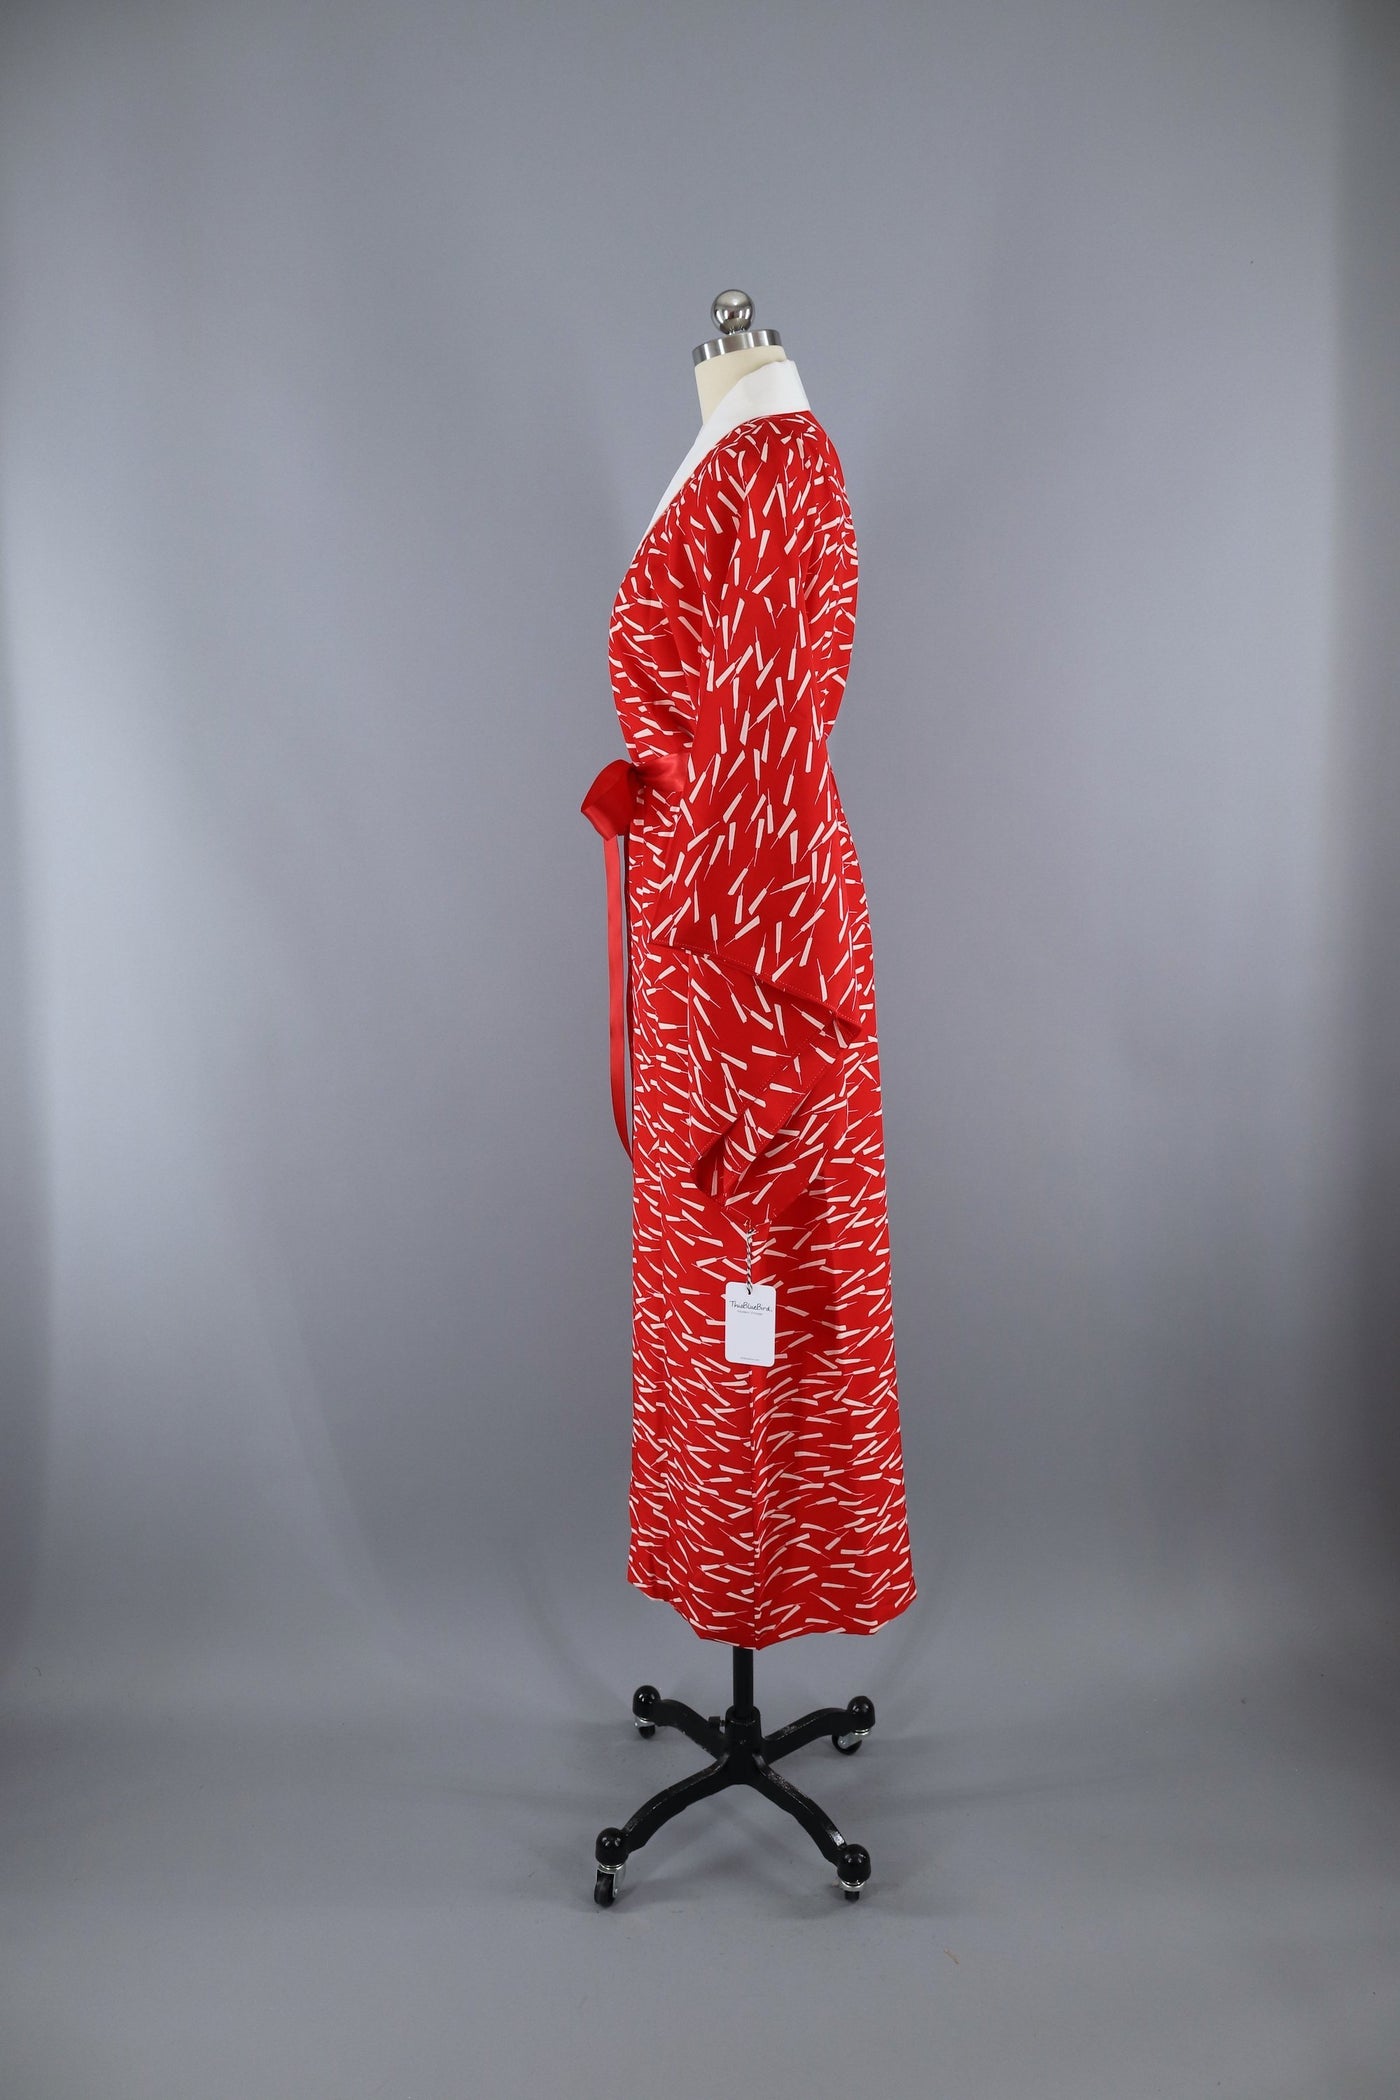 1950s Vintage Silk Kimono Robe / Red & White Novelty Print - ThisBlueBird